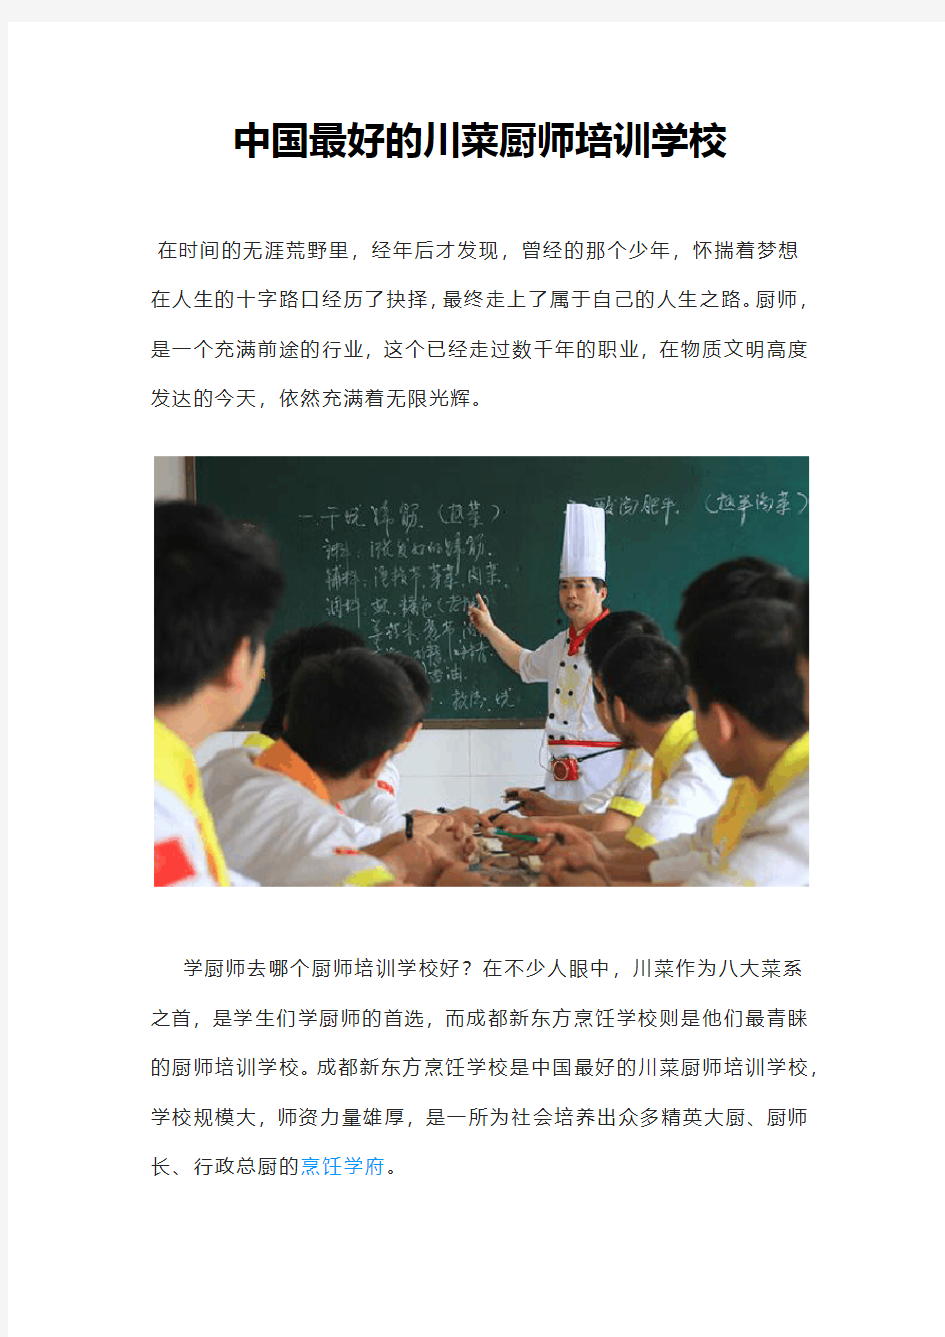 中国最好的川菜厨师培训学校